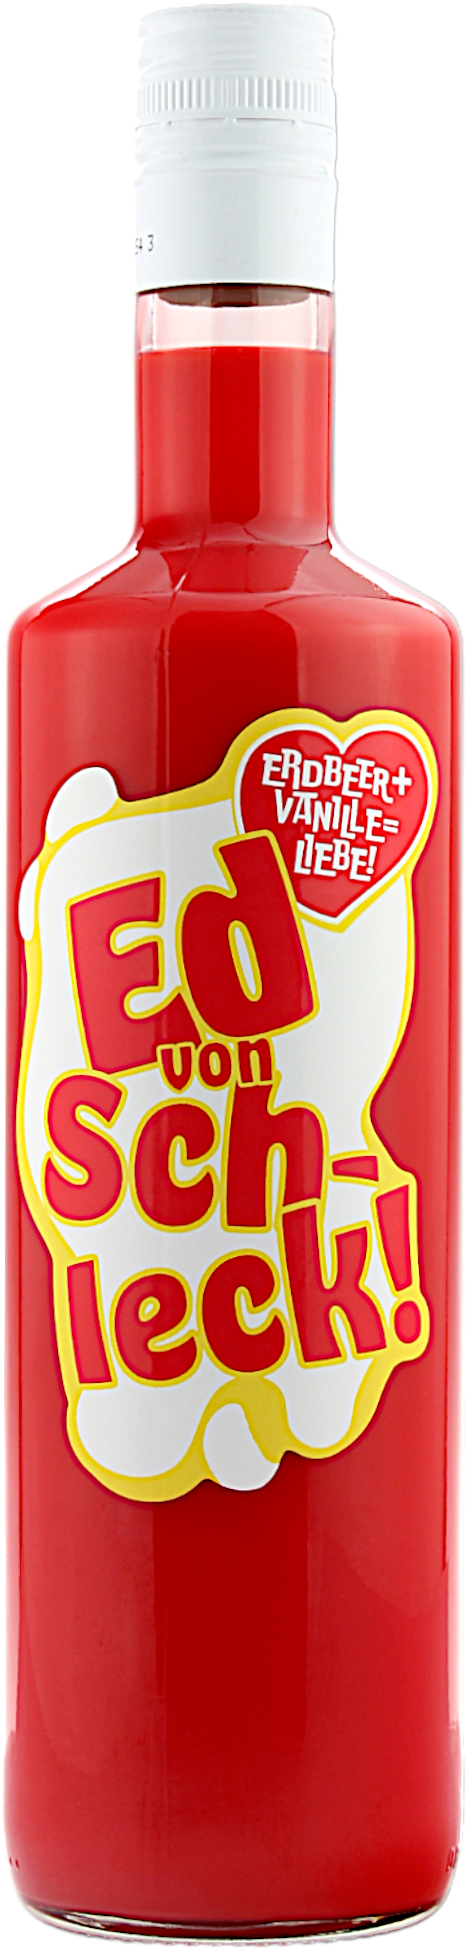 Ed von Schleck Erdbeer Sahne Likör 15.0% 0,7l